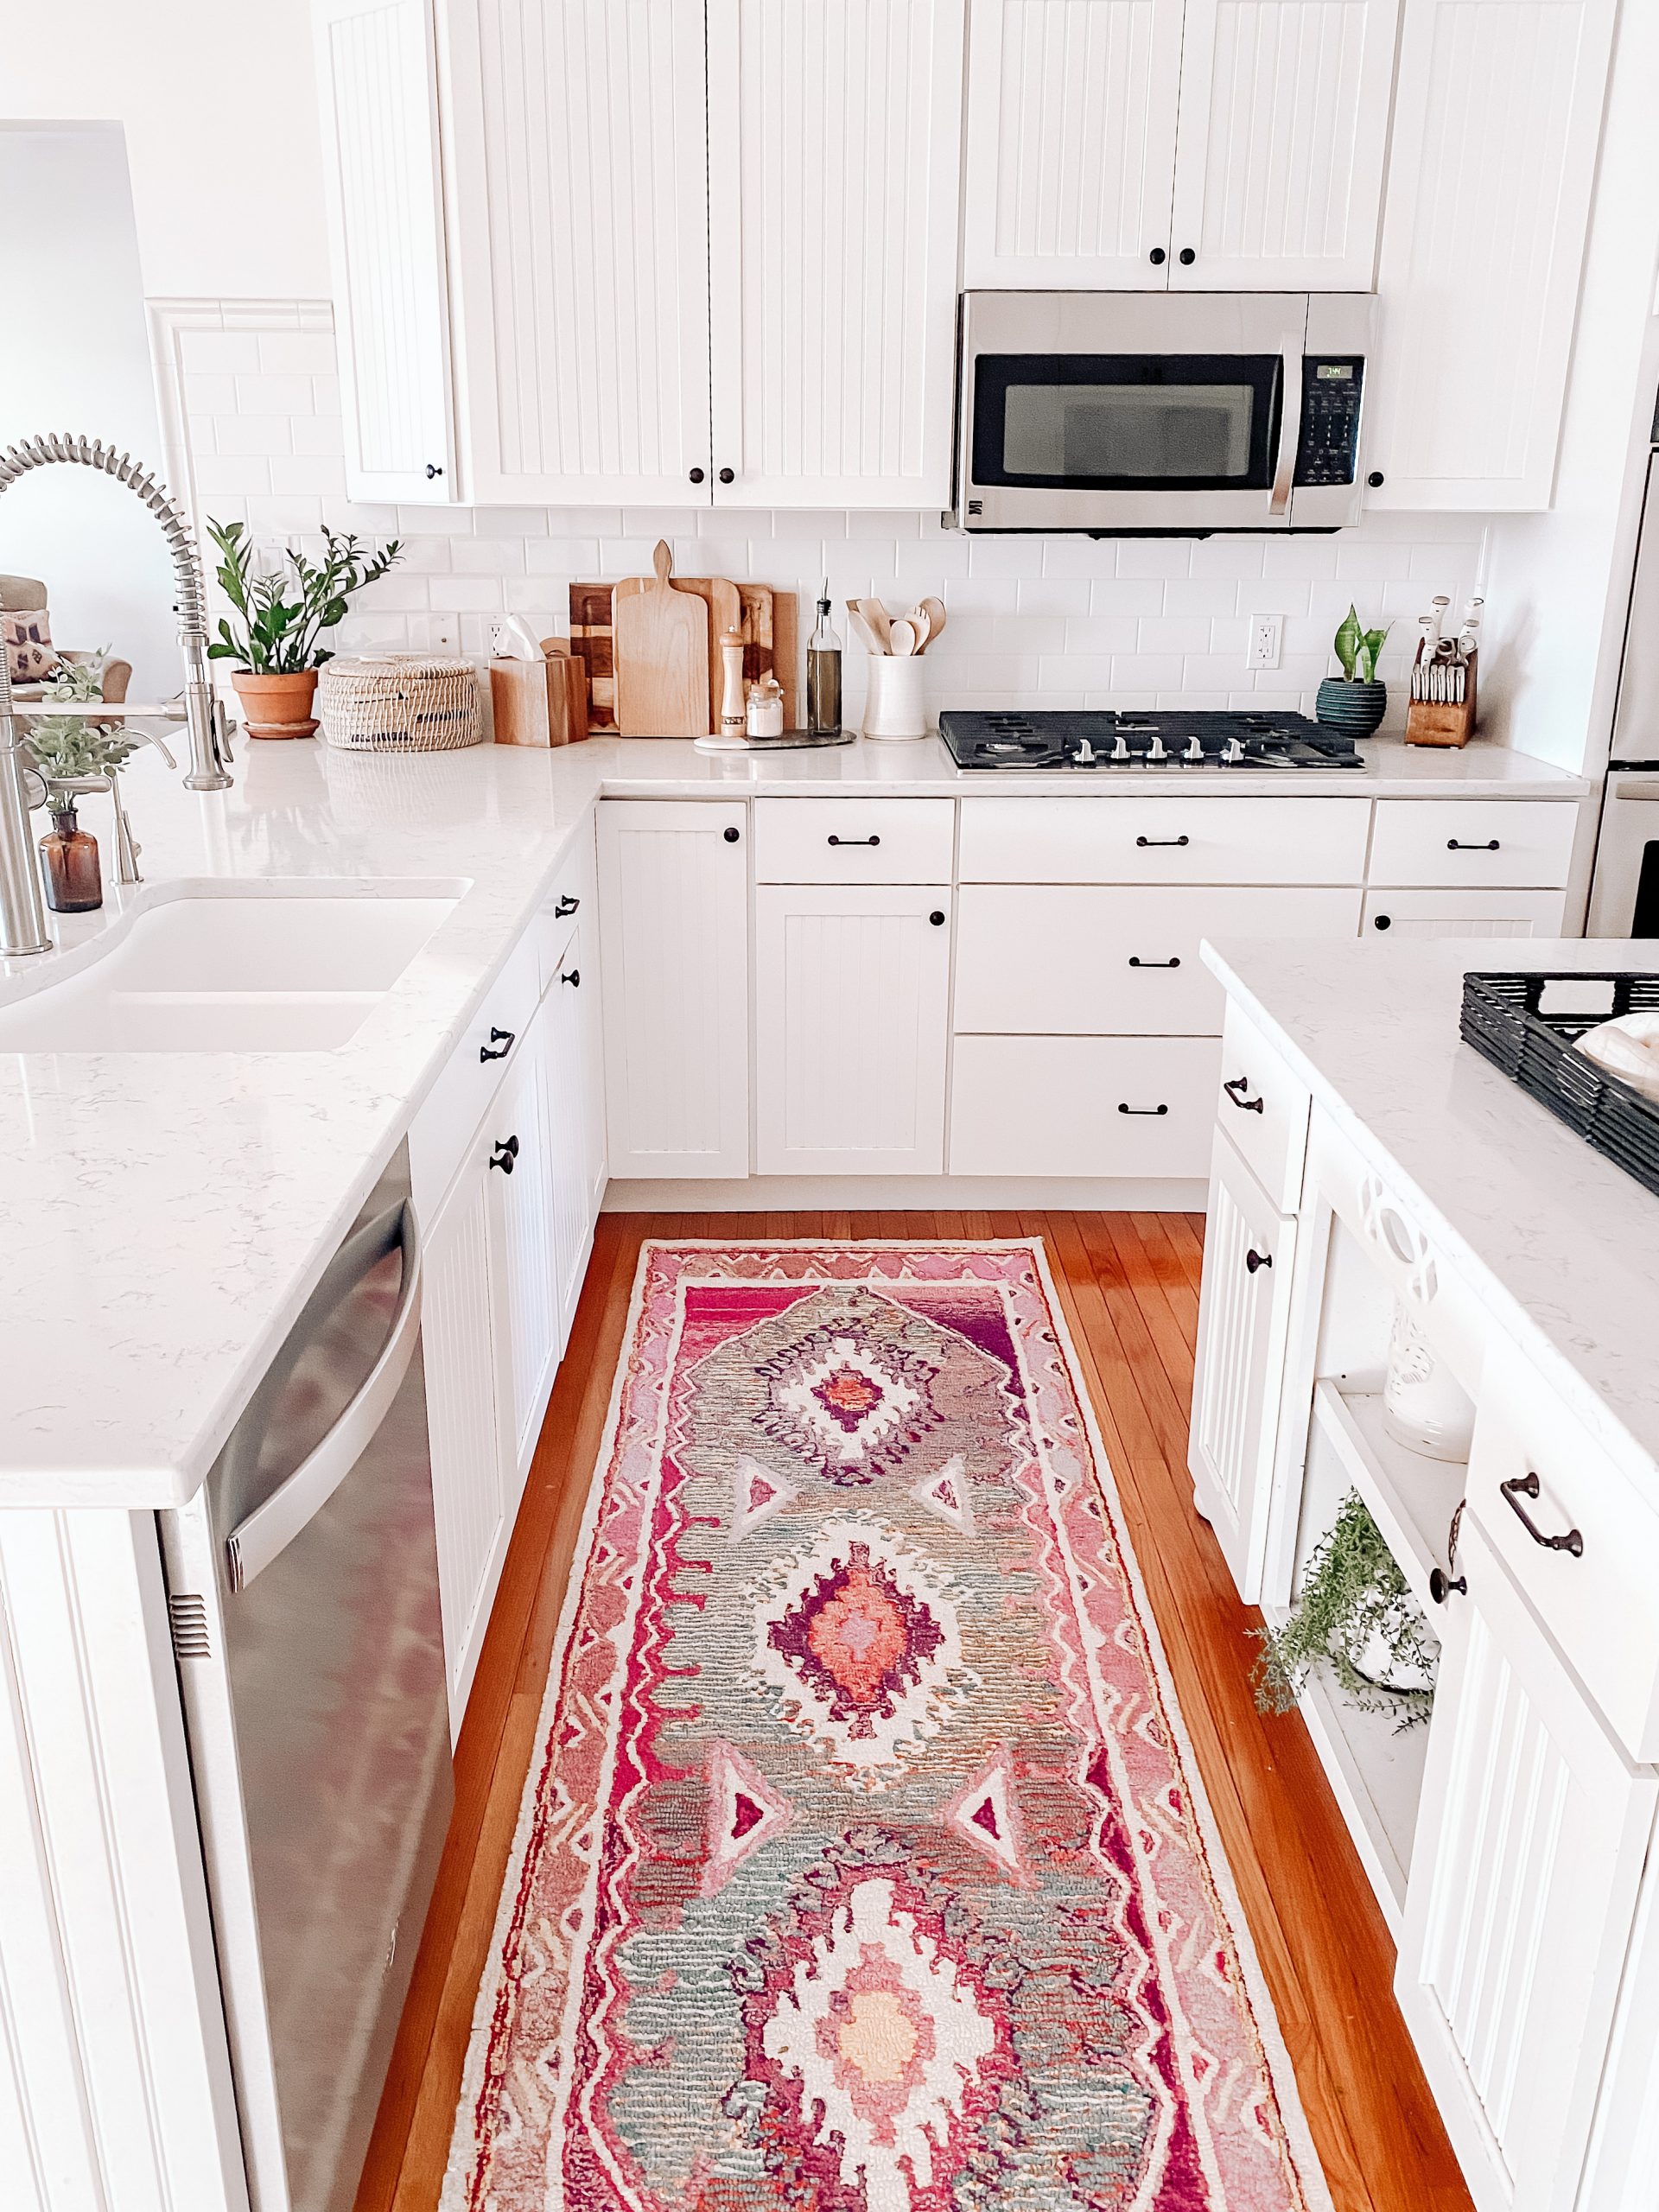 https://www.rugsusa.com/blog/wp-content/uploads/2021/06/best-pink-rug-for-kitchen-scaled.jpeg